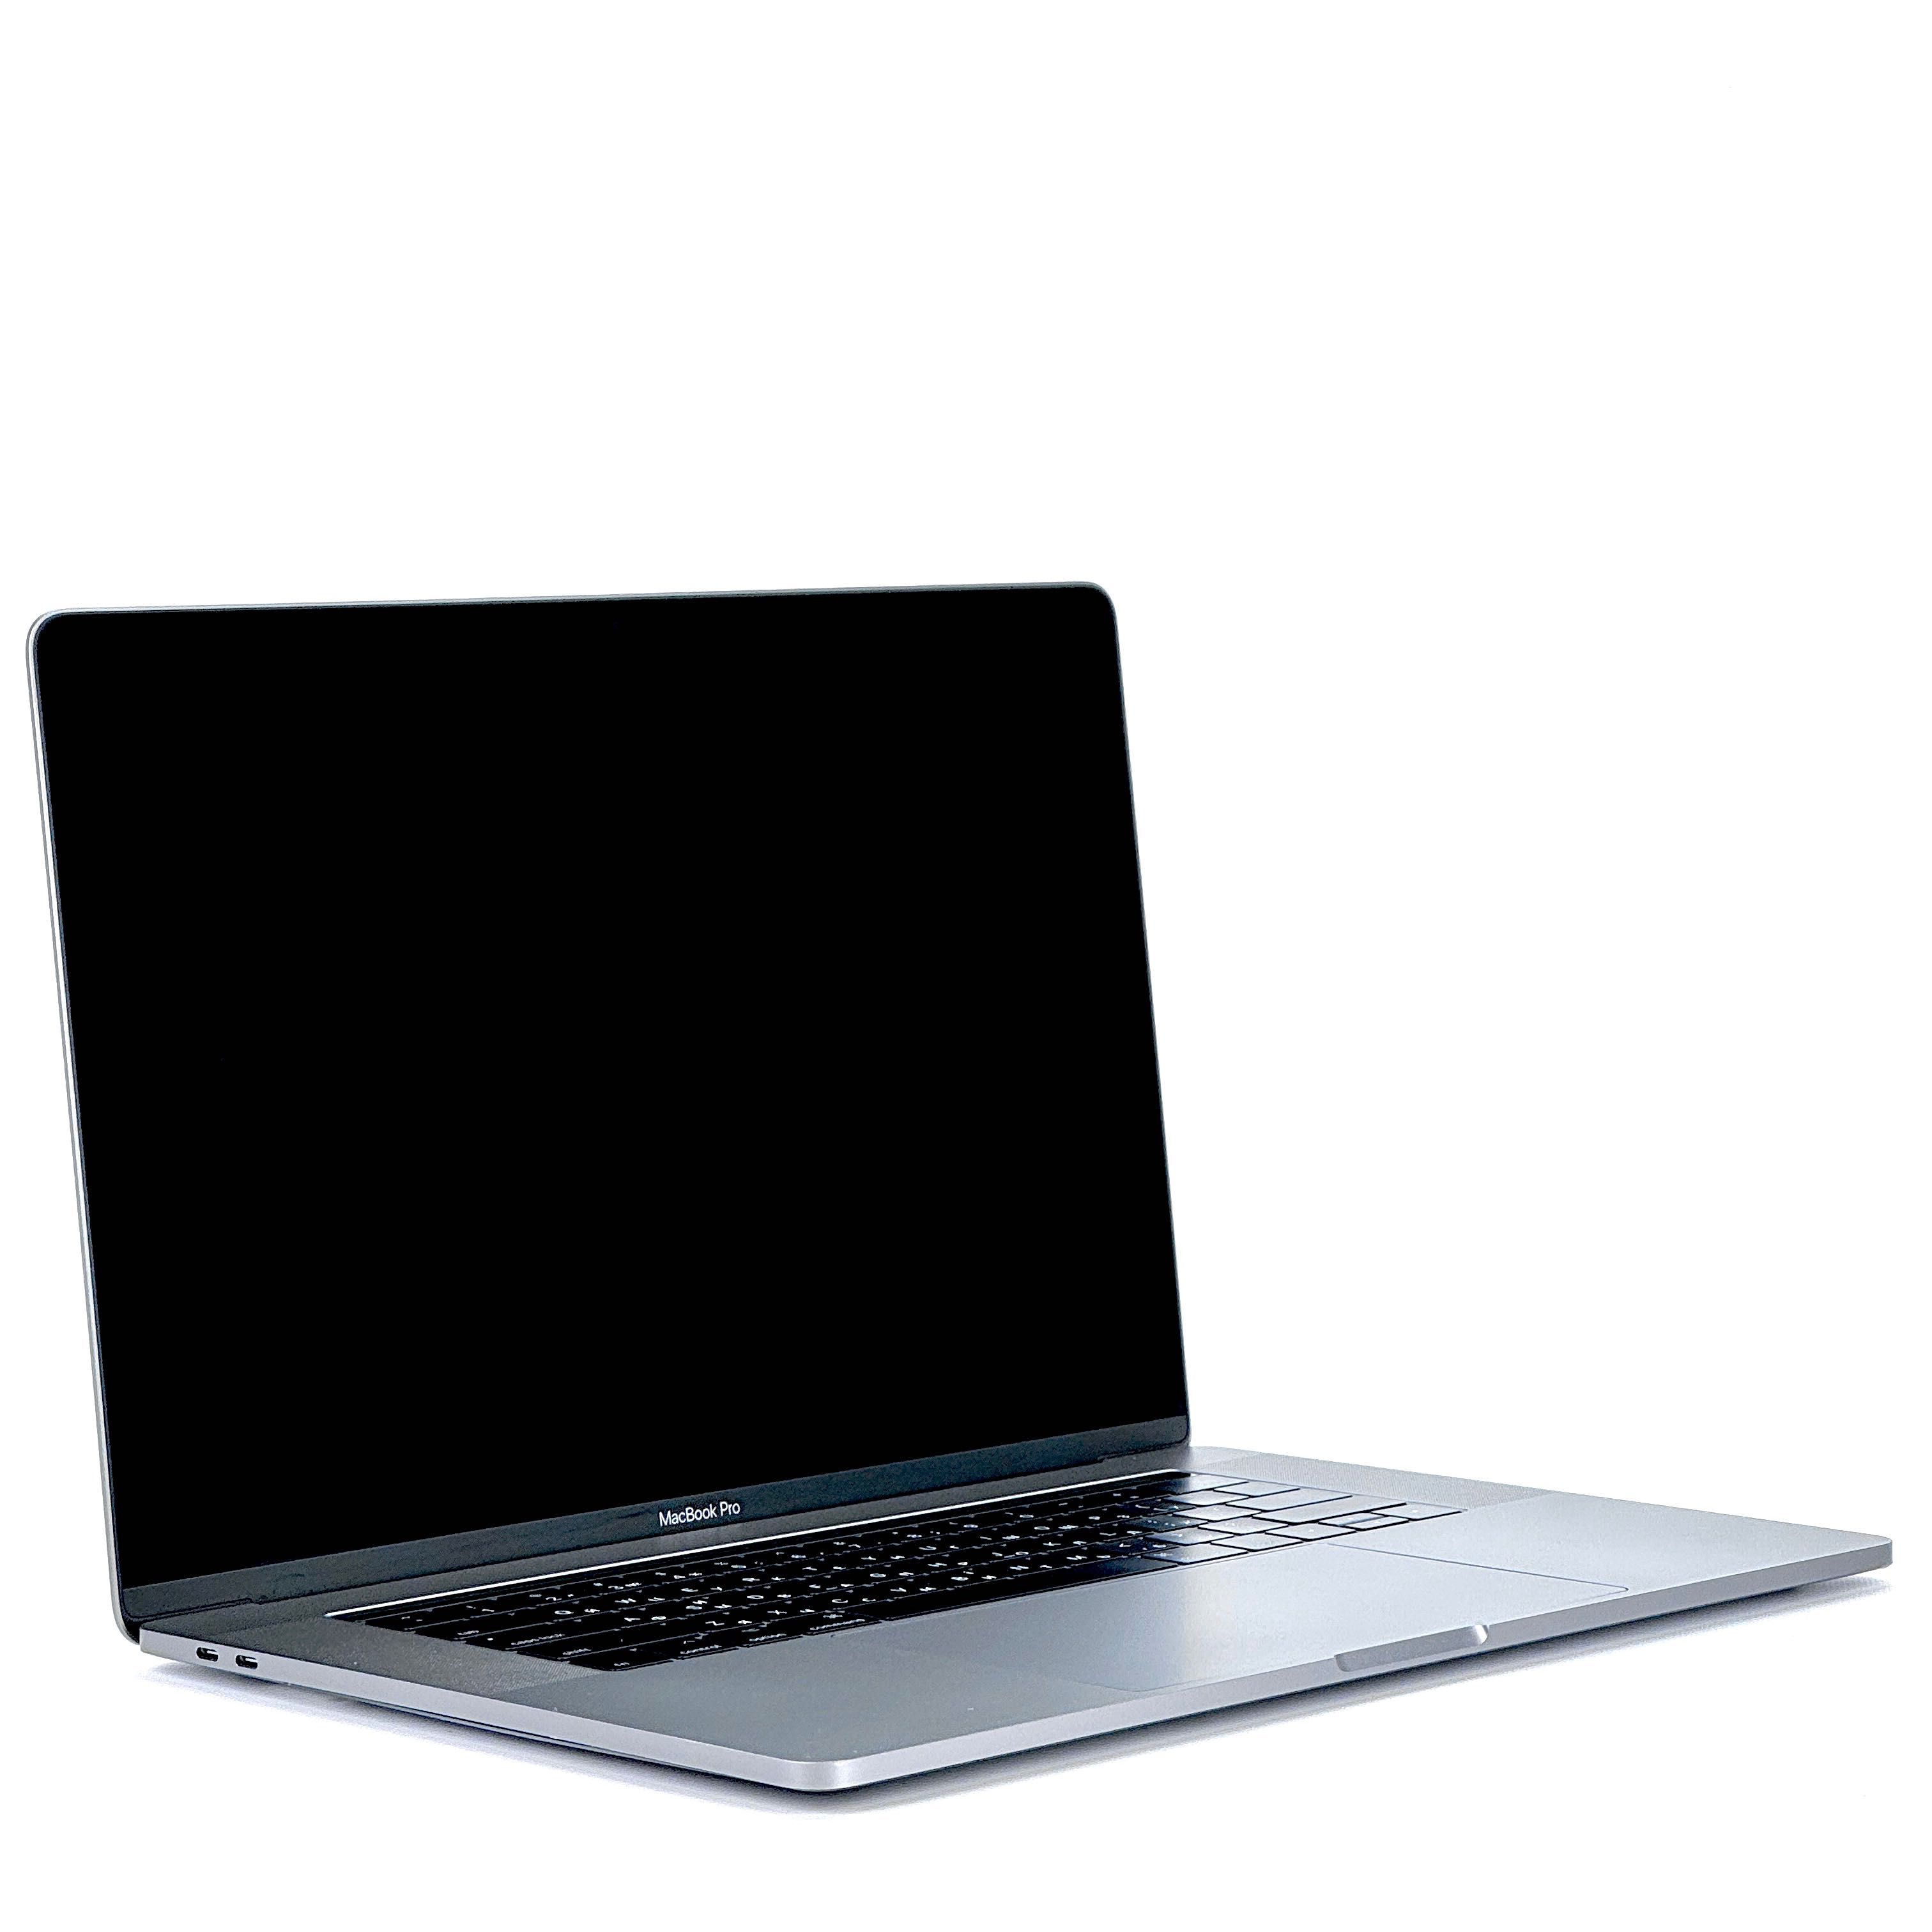 MacBook Pro 15 2017 i7|16|512|pro560. ШОУ-РУМ+, TRADE IN+, гарантія+